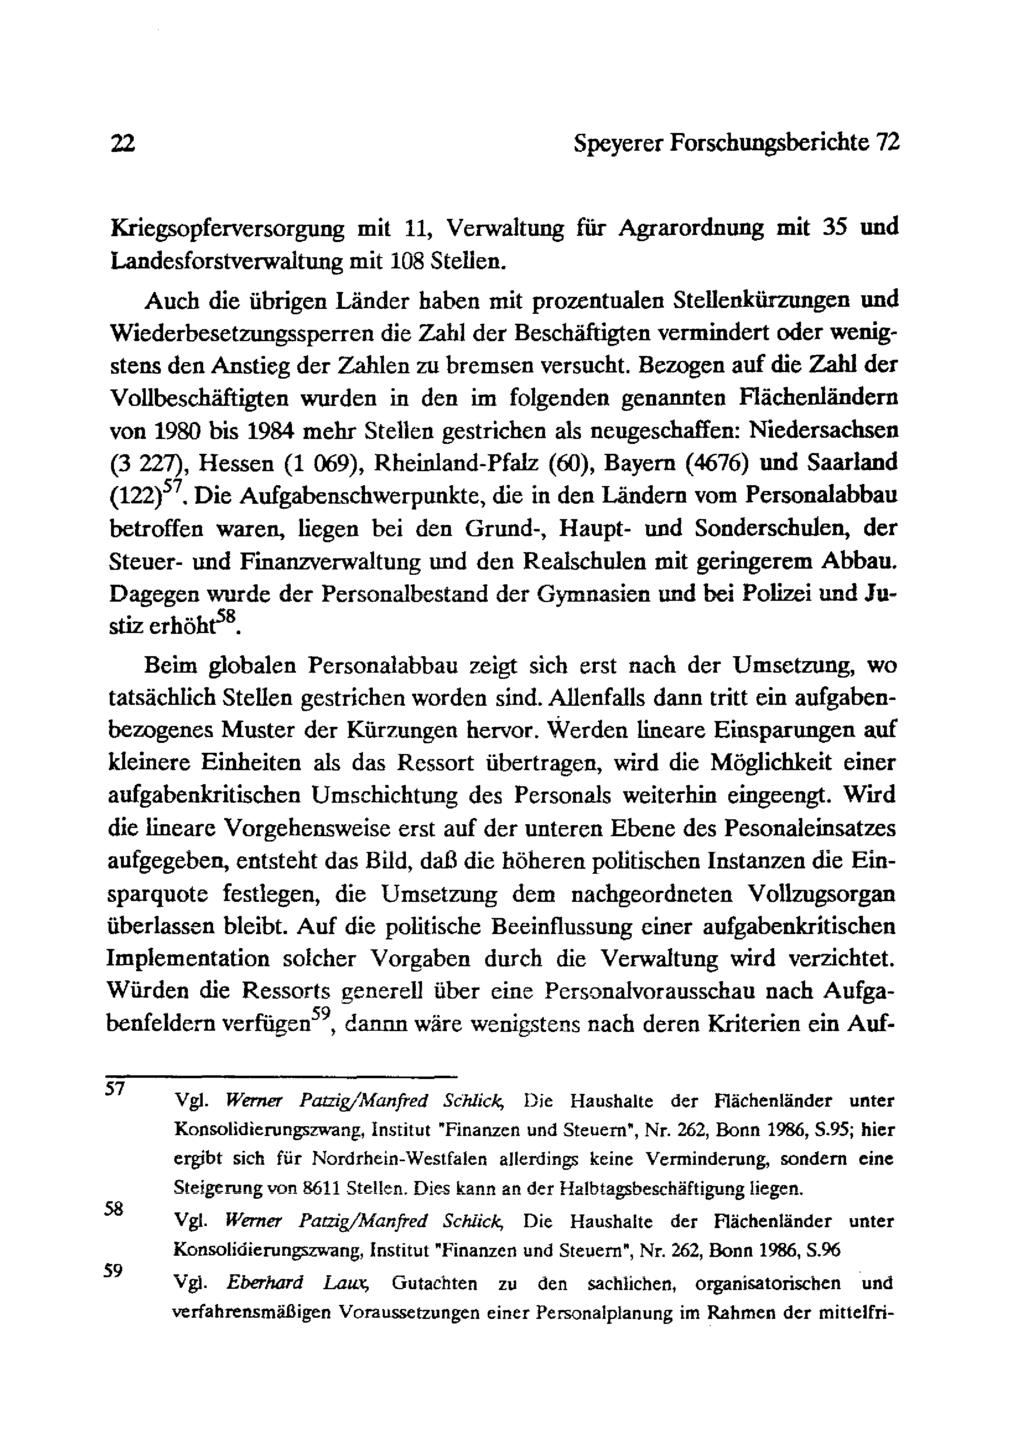 22 Speyerer Forschungsberichte 72 Kriegsopferversorgung mit 11, Verwaltung für Agrarordnung mit 35 und Landesforstverwaitung mit 108 Stellen.